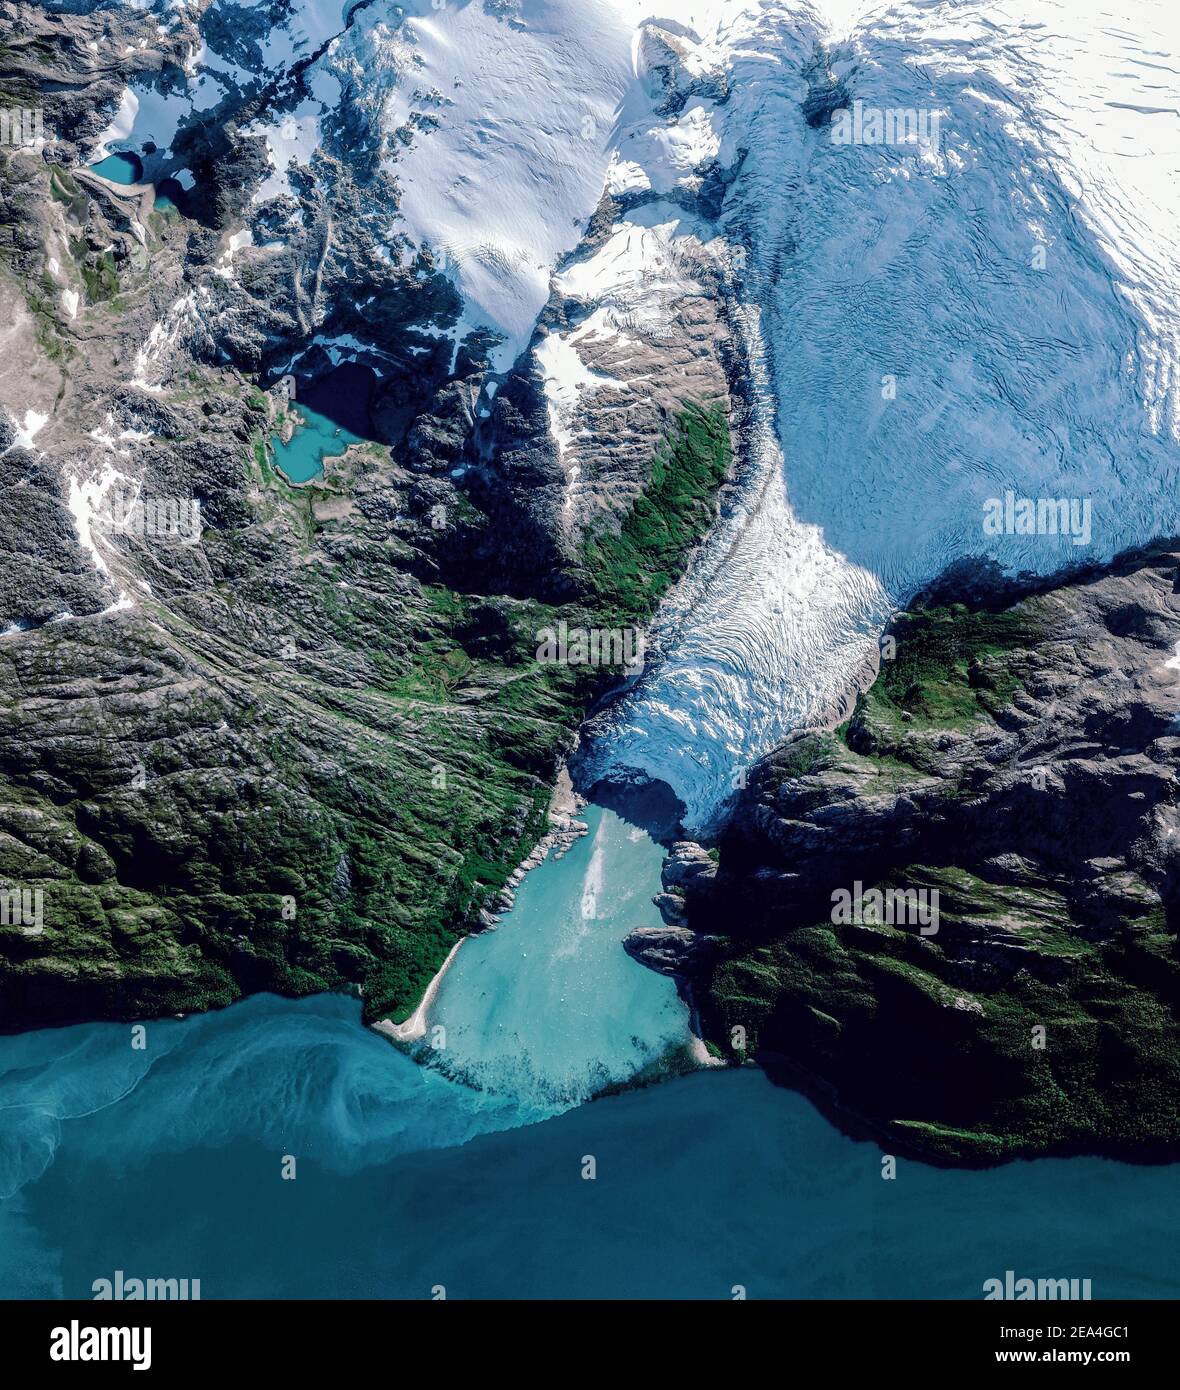 Satellitenansicht eines Gletschers, Cabo de Hornos, Chile. Glaciar Italiano. Eis schmilzt. Klimawandel. Element dieses Bildes wird von der NASA eingerichtet Stockfoto